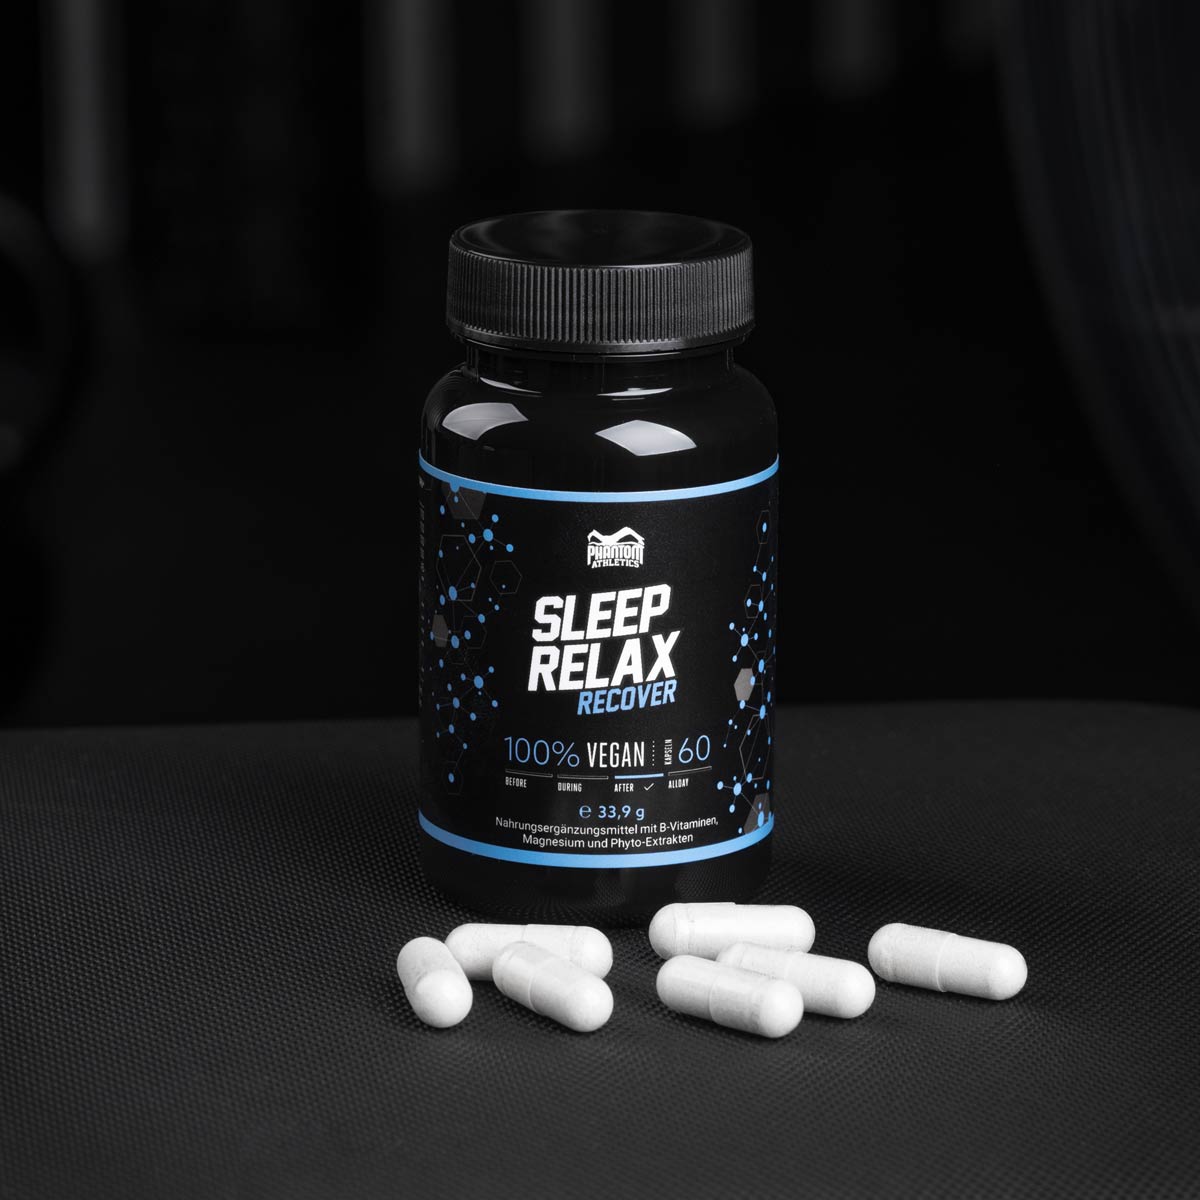 Besserer Schlaf - Bessere Regeneration. Mit dem Phantom Sleep &amp; Relax Supplement für Fighter.